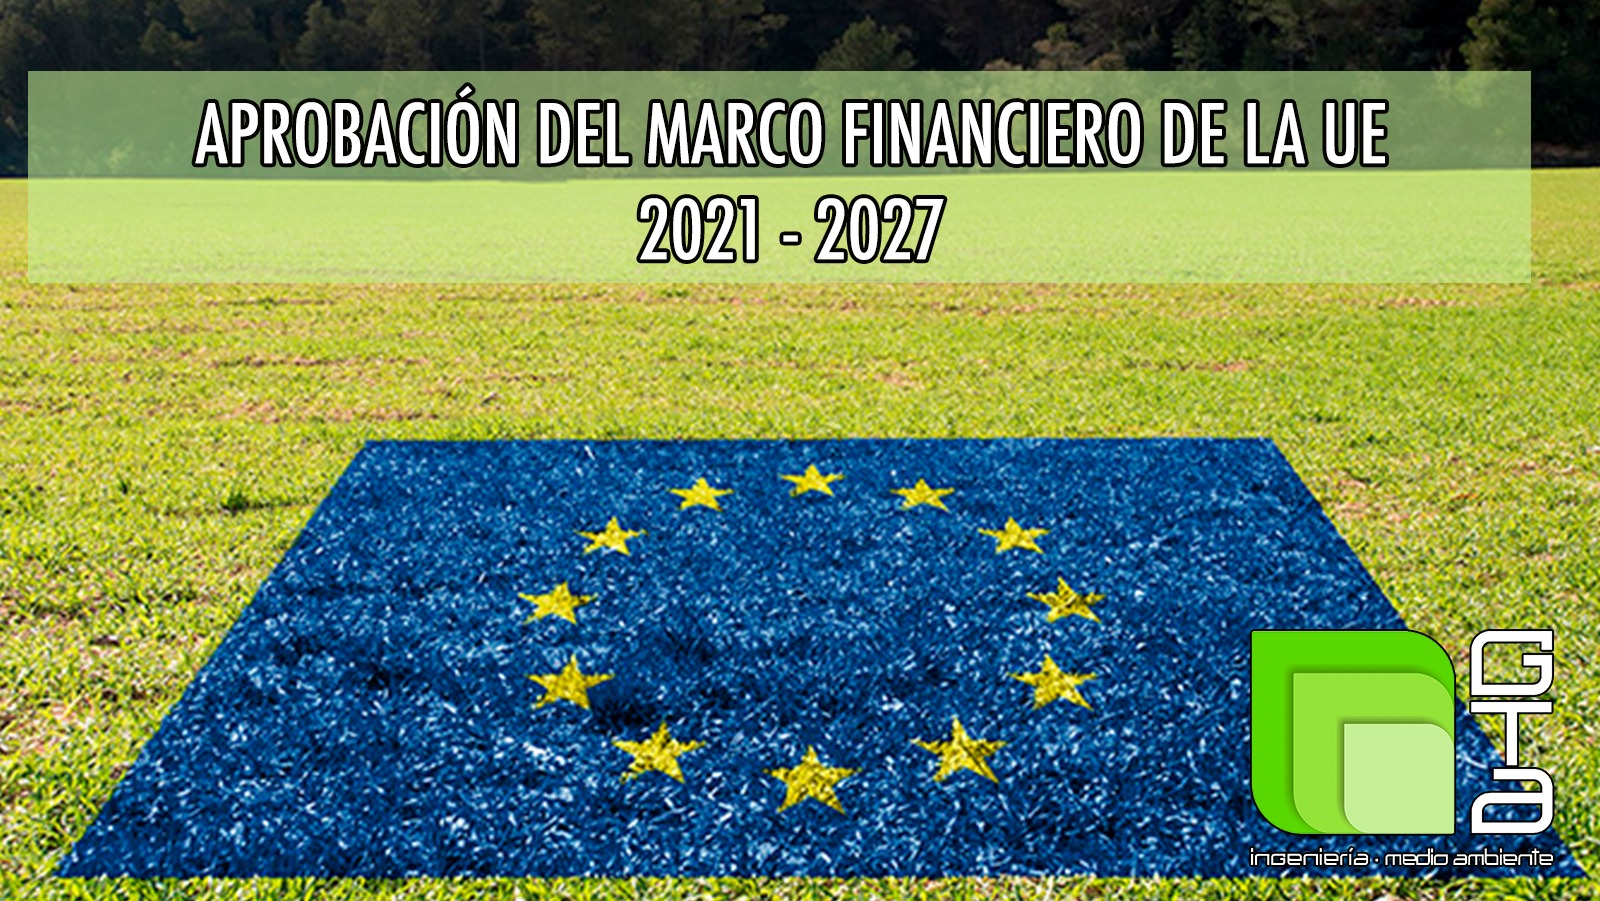 Aprobación del marco financiero plurianual de la UE para 2021 - 2027